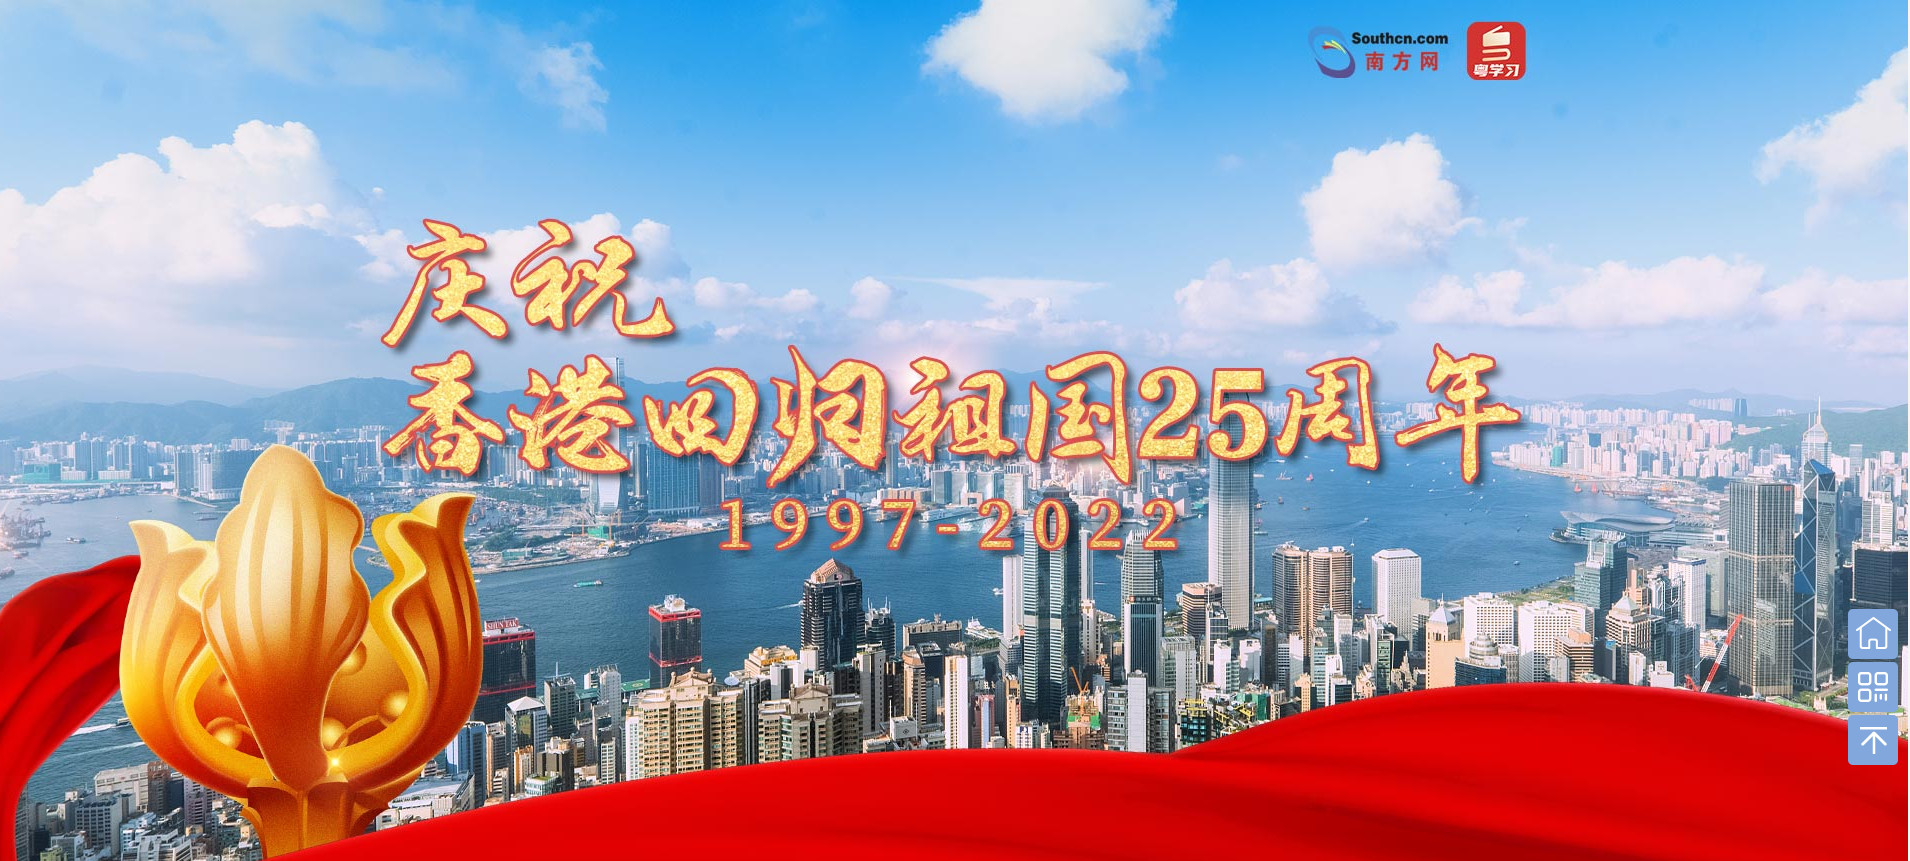 【专题】庆祝香港回归祖国25周年